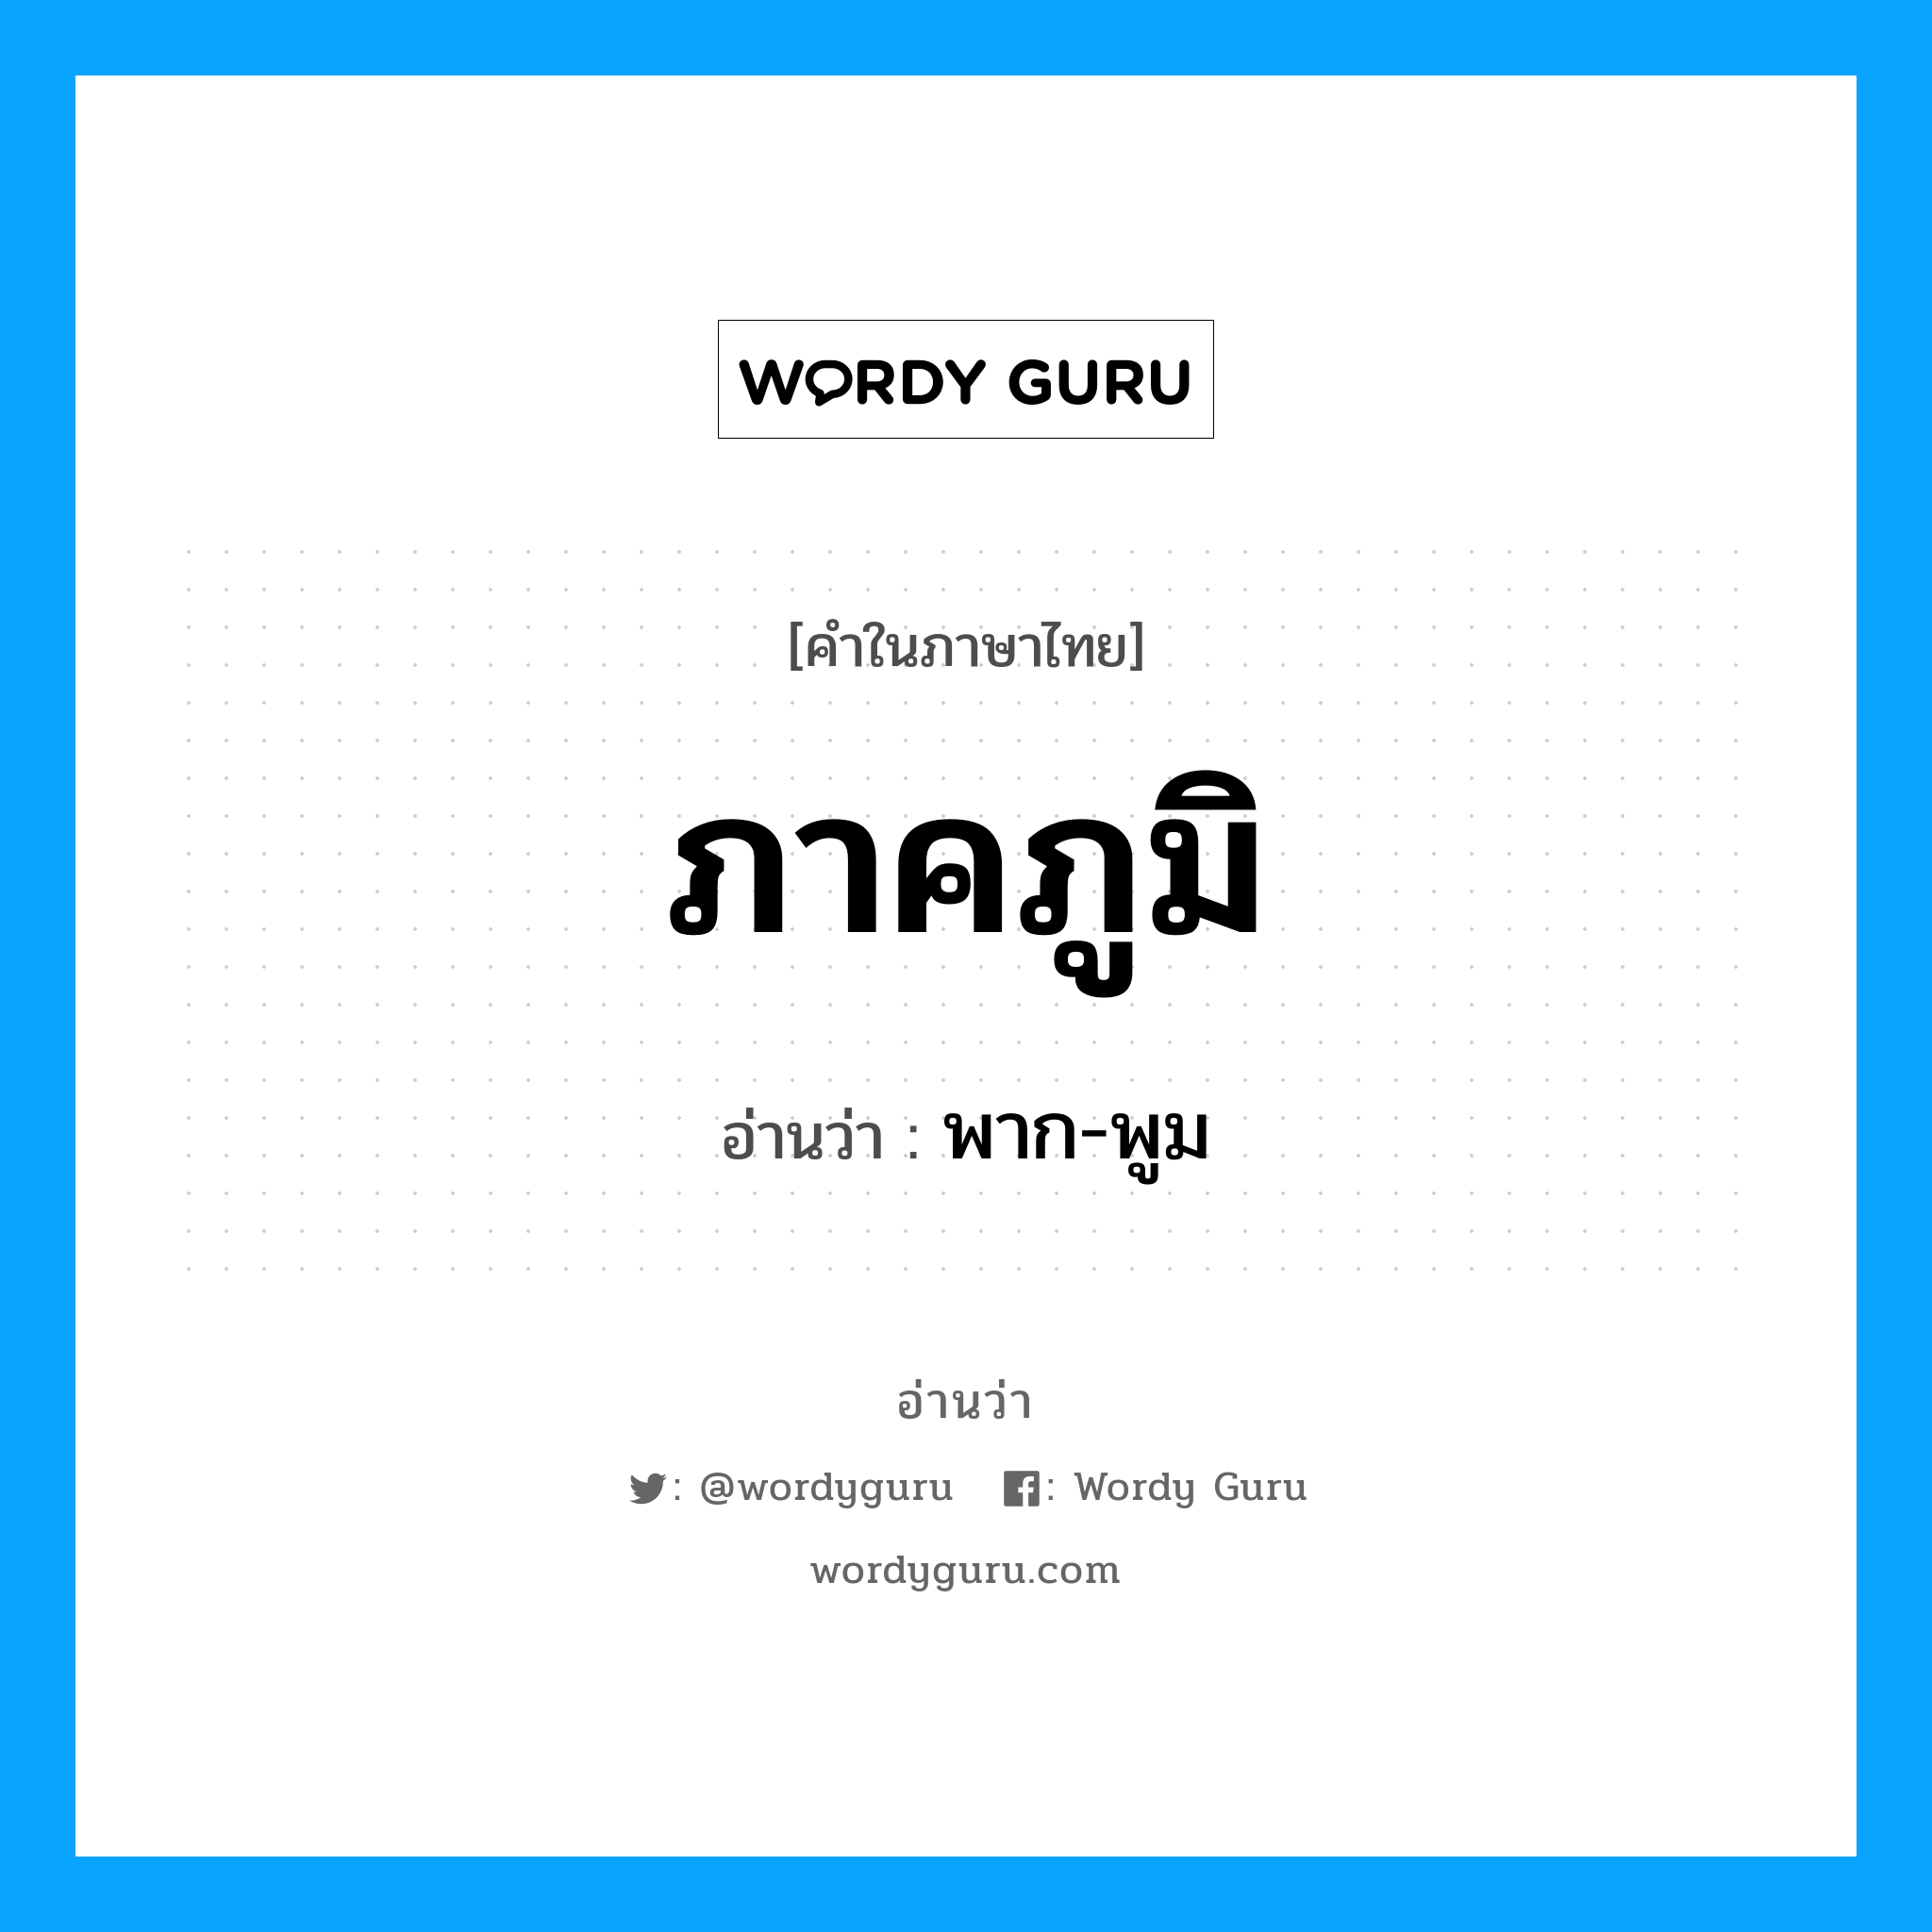 พาก-พูม เป็นคำอ่านของคำไหน?, คำในภาษาไทย พาก-พูม อ่านว่า ภาคภูมิ